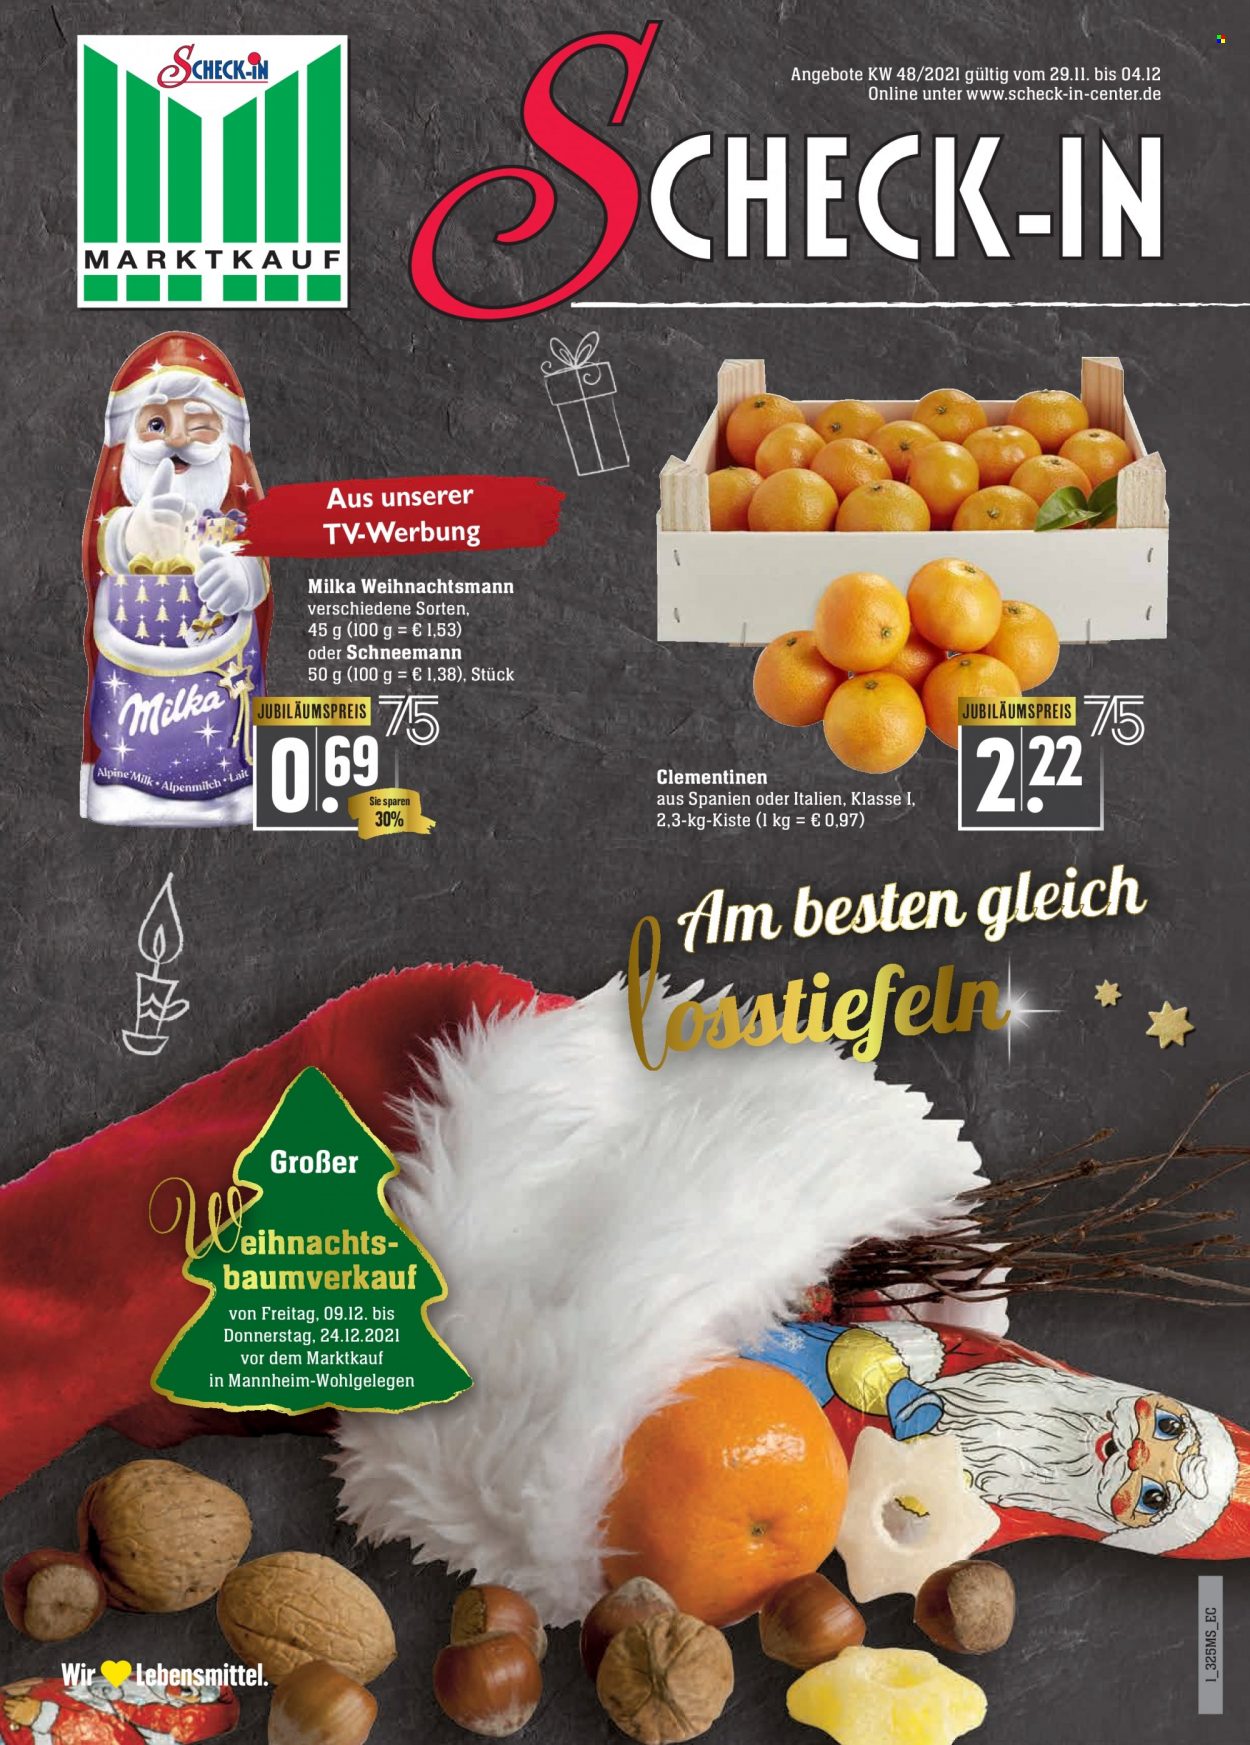 Prospekte Marktkauf - 6.12.2021 - 11.12.2021 - Produkte in Aktion - Clementinen, Milka, Schokolade. Seite 1.